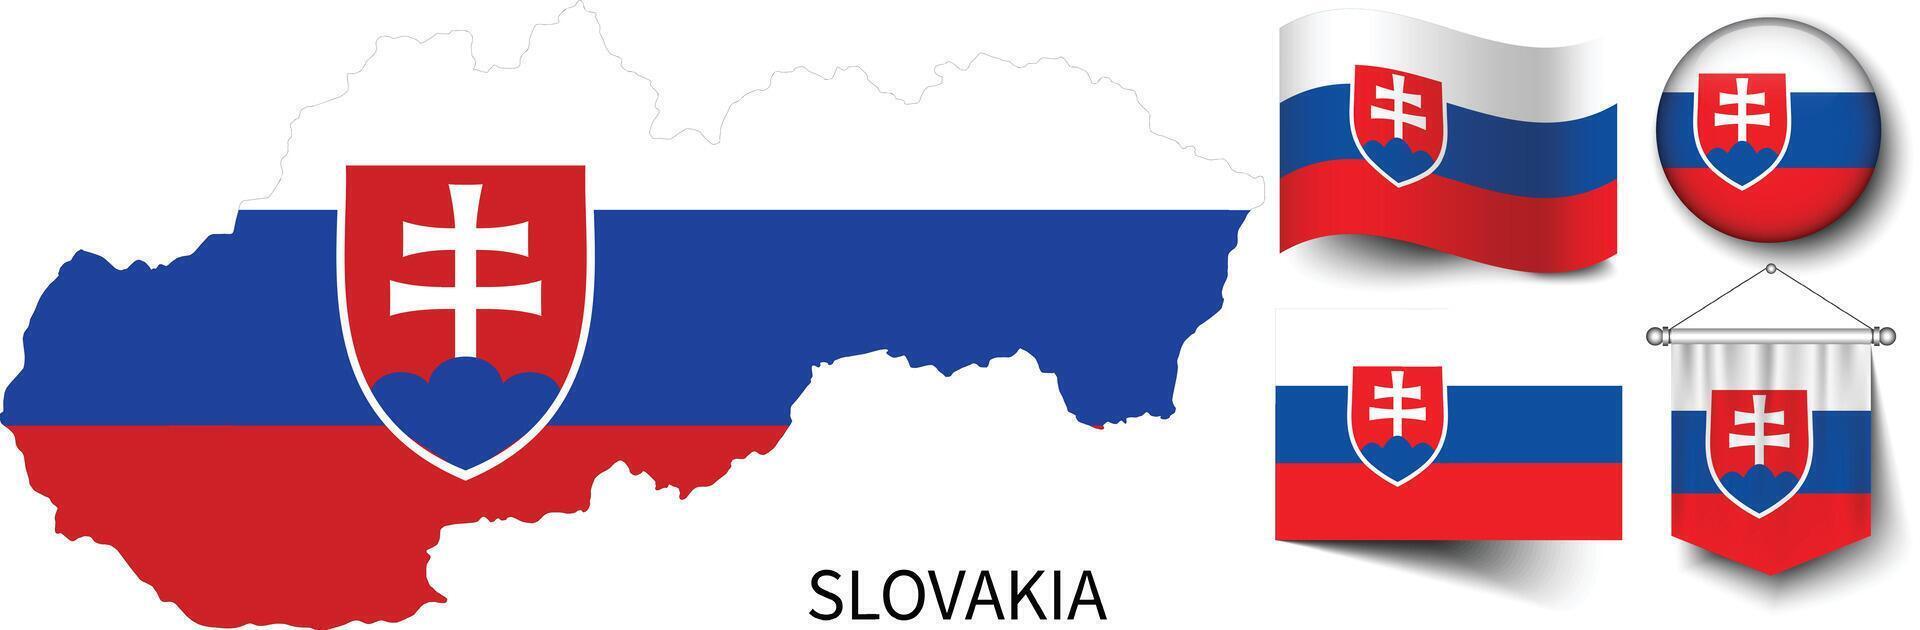 el varios patrones de el Eslovaquia nacional banderas y el mapa de el Eslovaquia fronteras vector